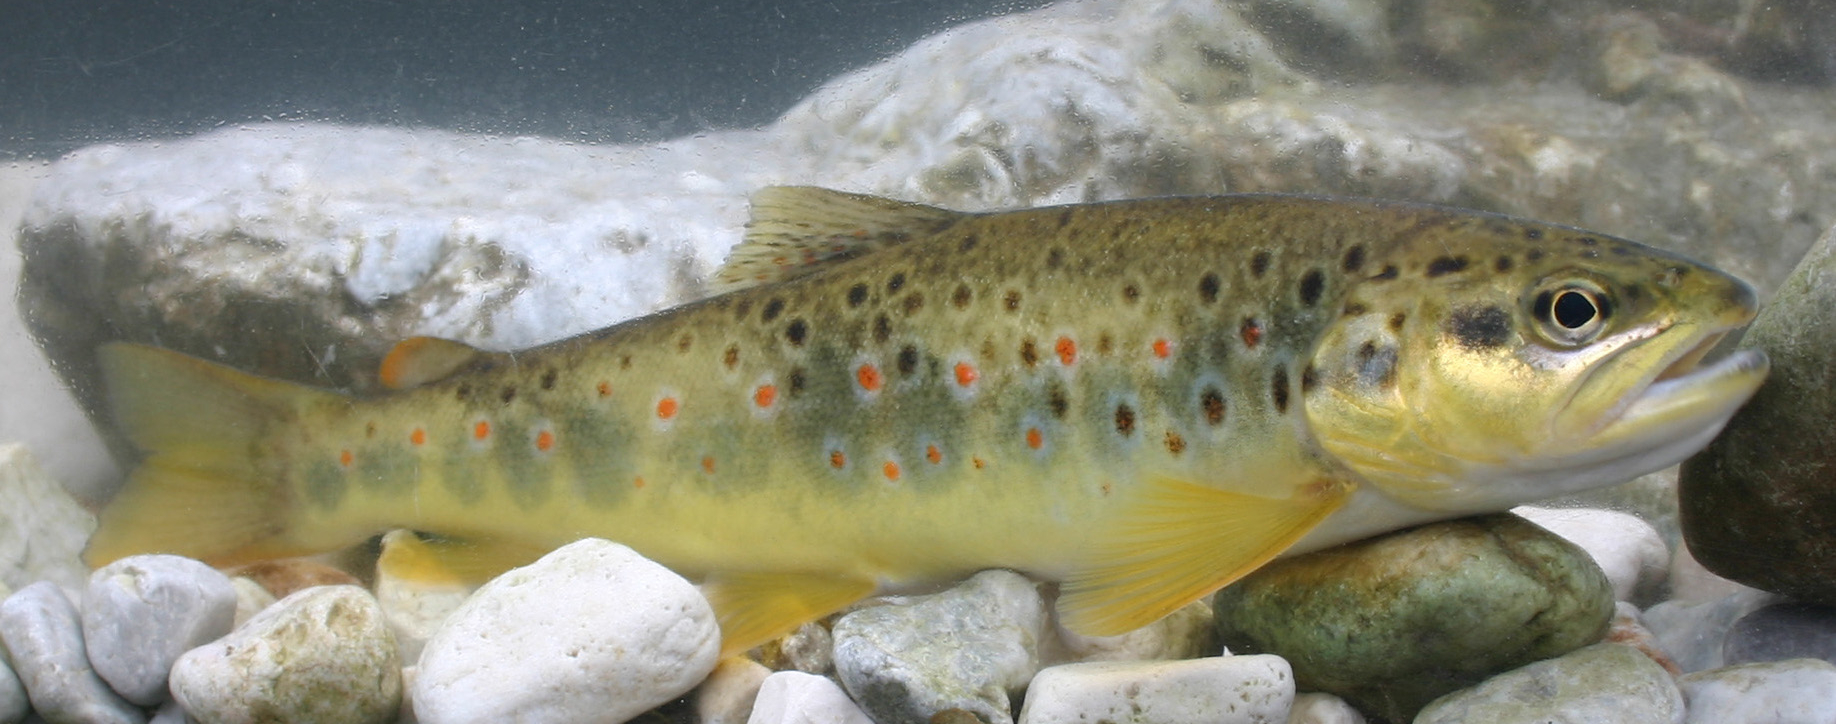 brown trout - Salmo trutta